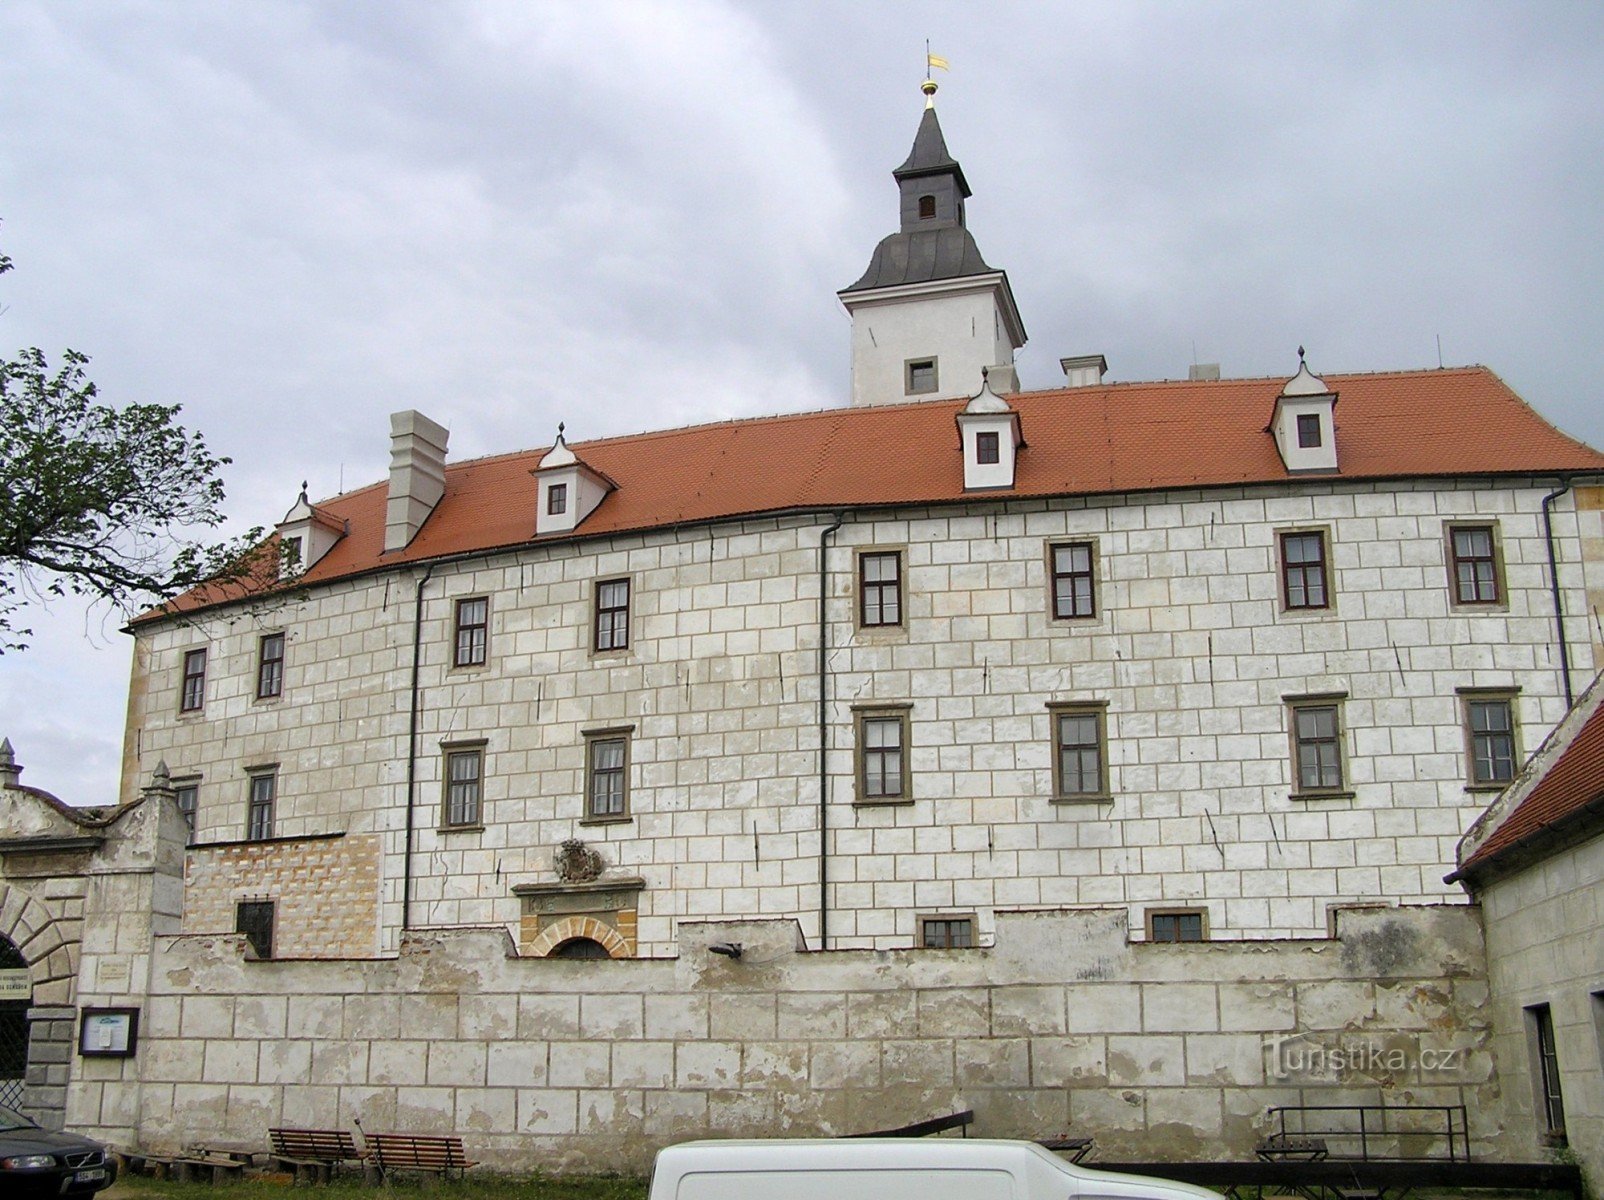 Jevišoice - Stari grad (kolovoz 2006.)